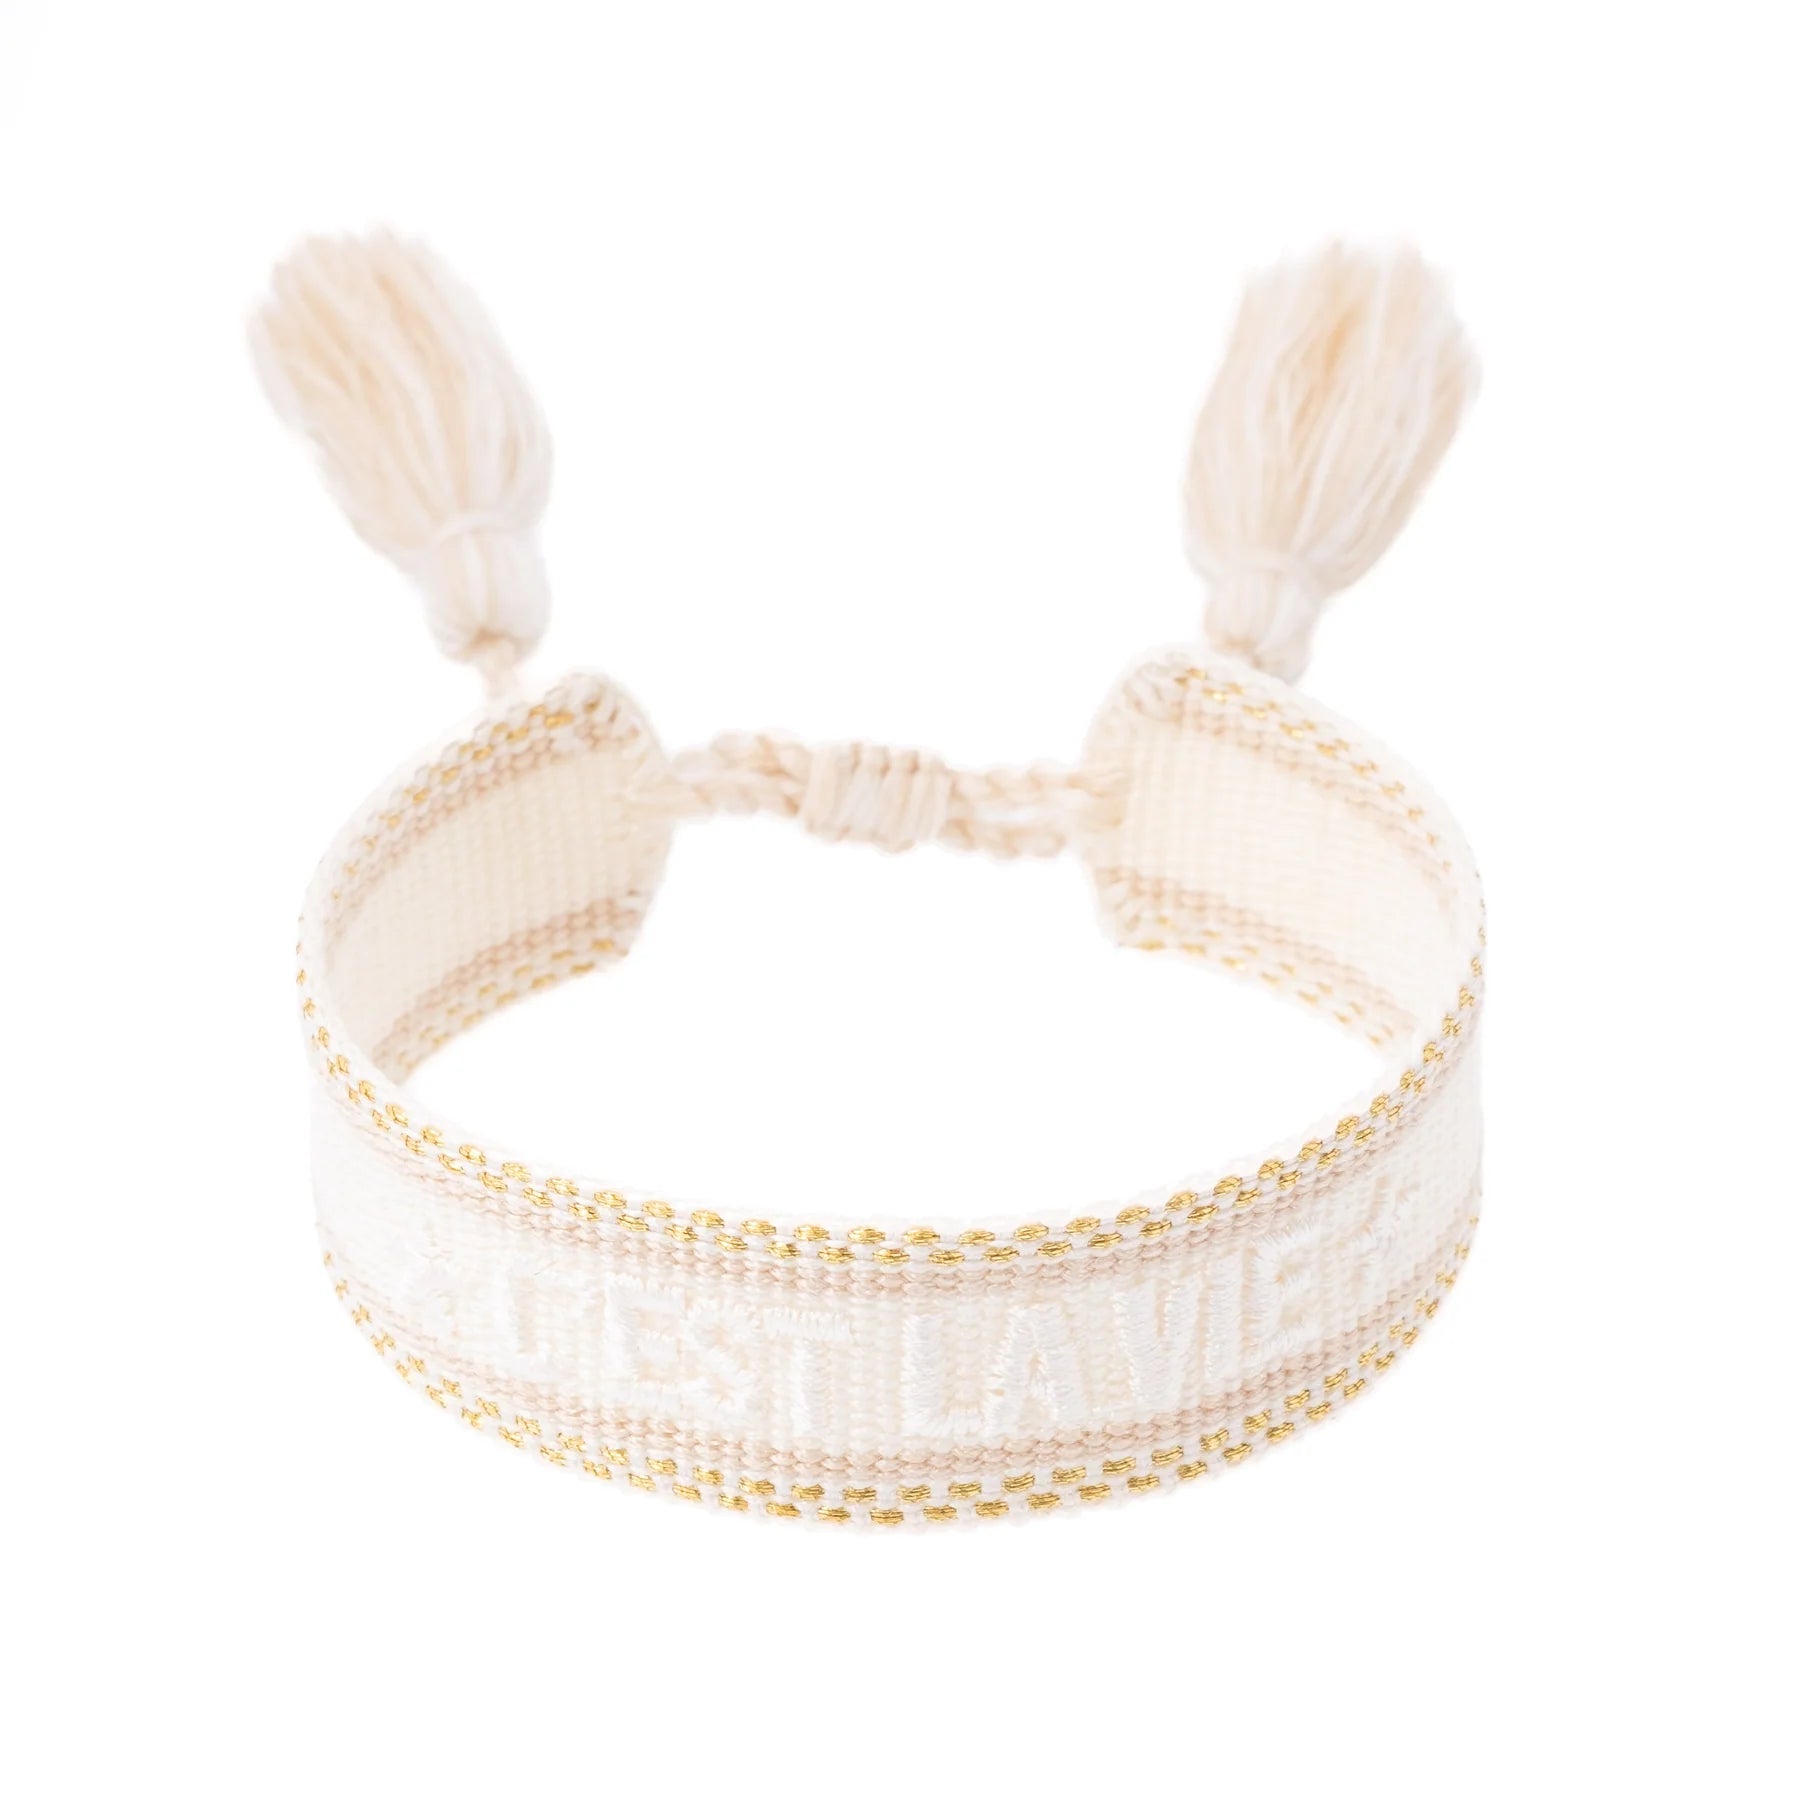 Woven Bracelet "C'est La Vie" Vanilla w/Gold